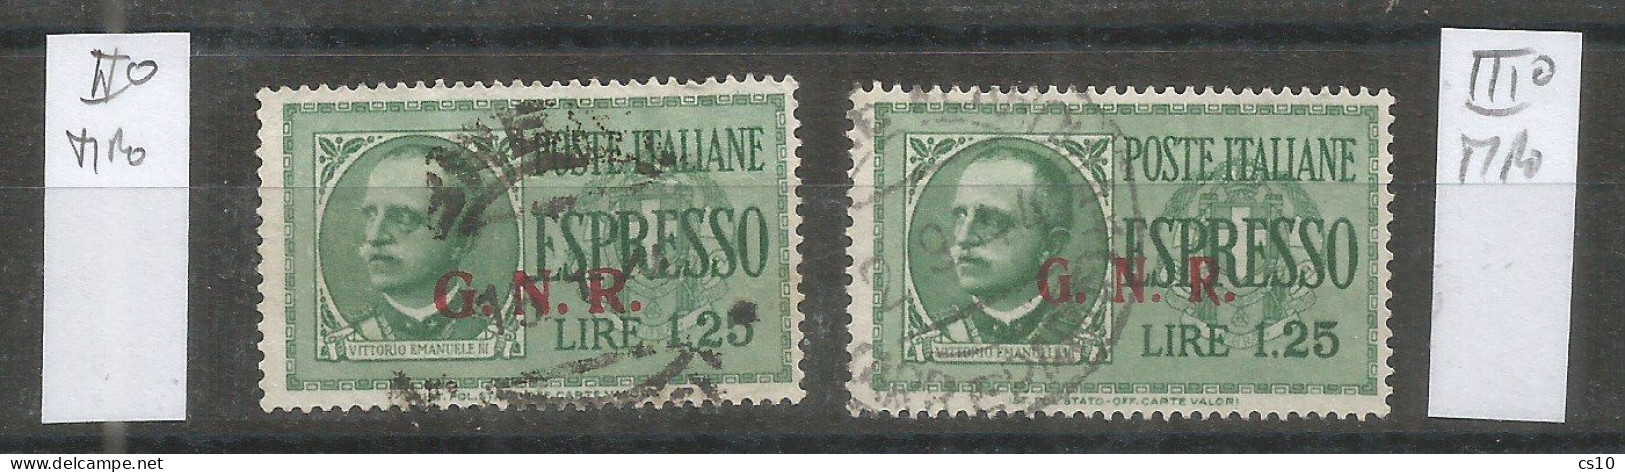 Italia Rep.Sociale Emissioni Guardia Naz. Repubblicana - Espresso L.1,25 USATO  II° Tipo + III° Tipo - Correo Urgente